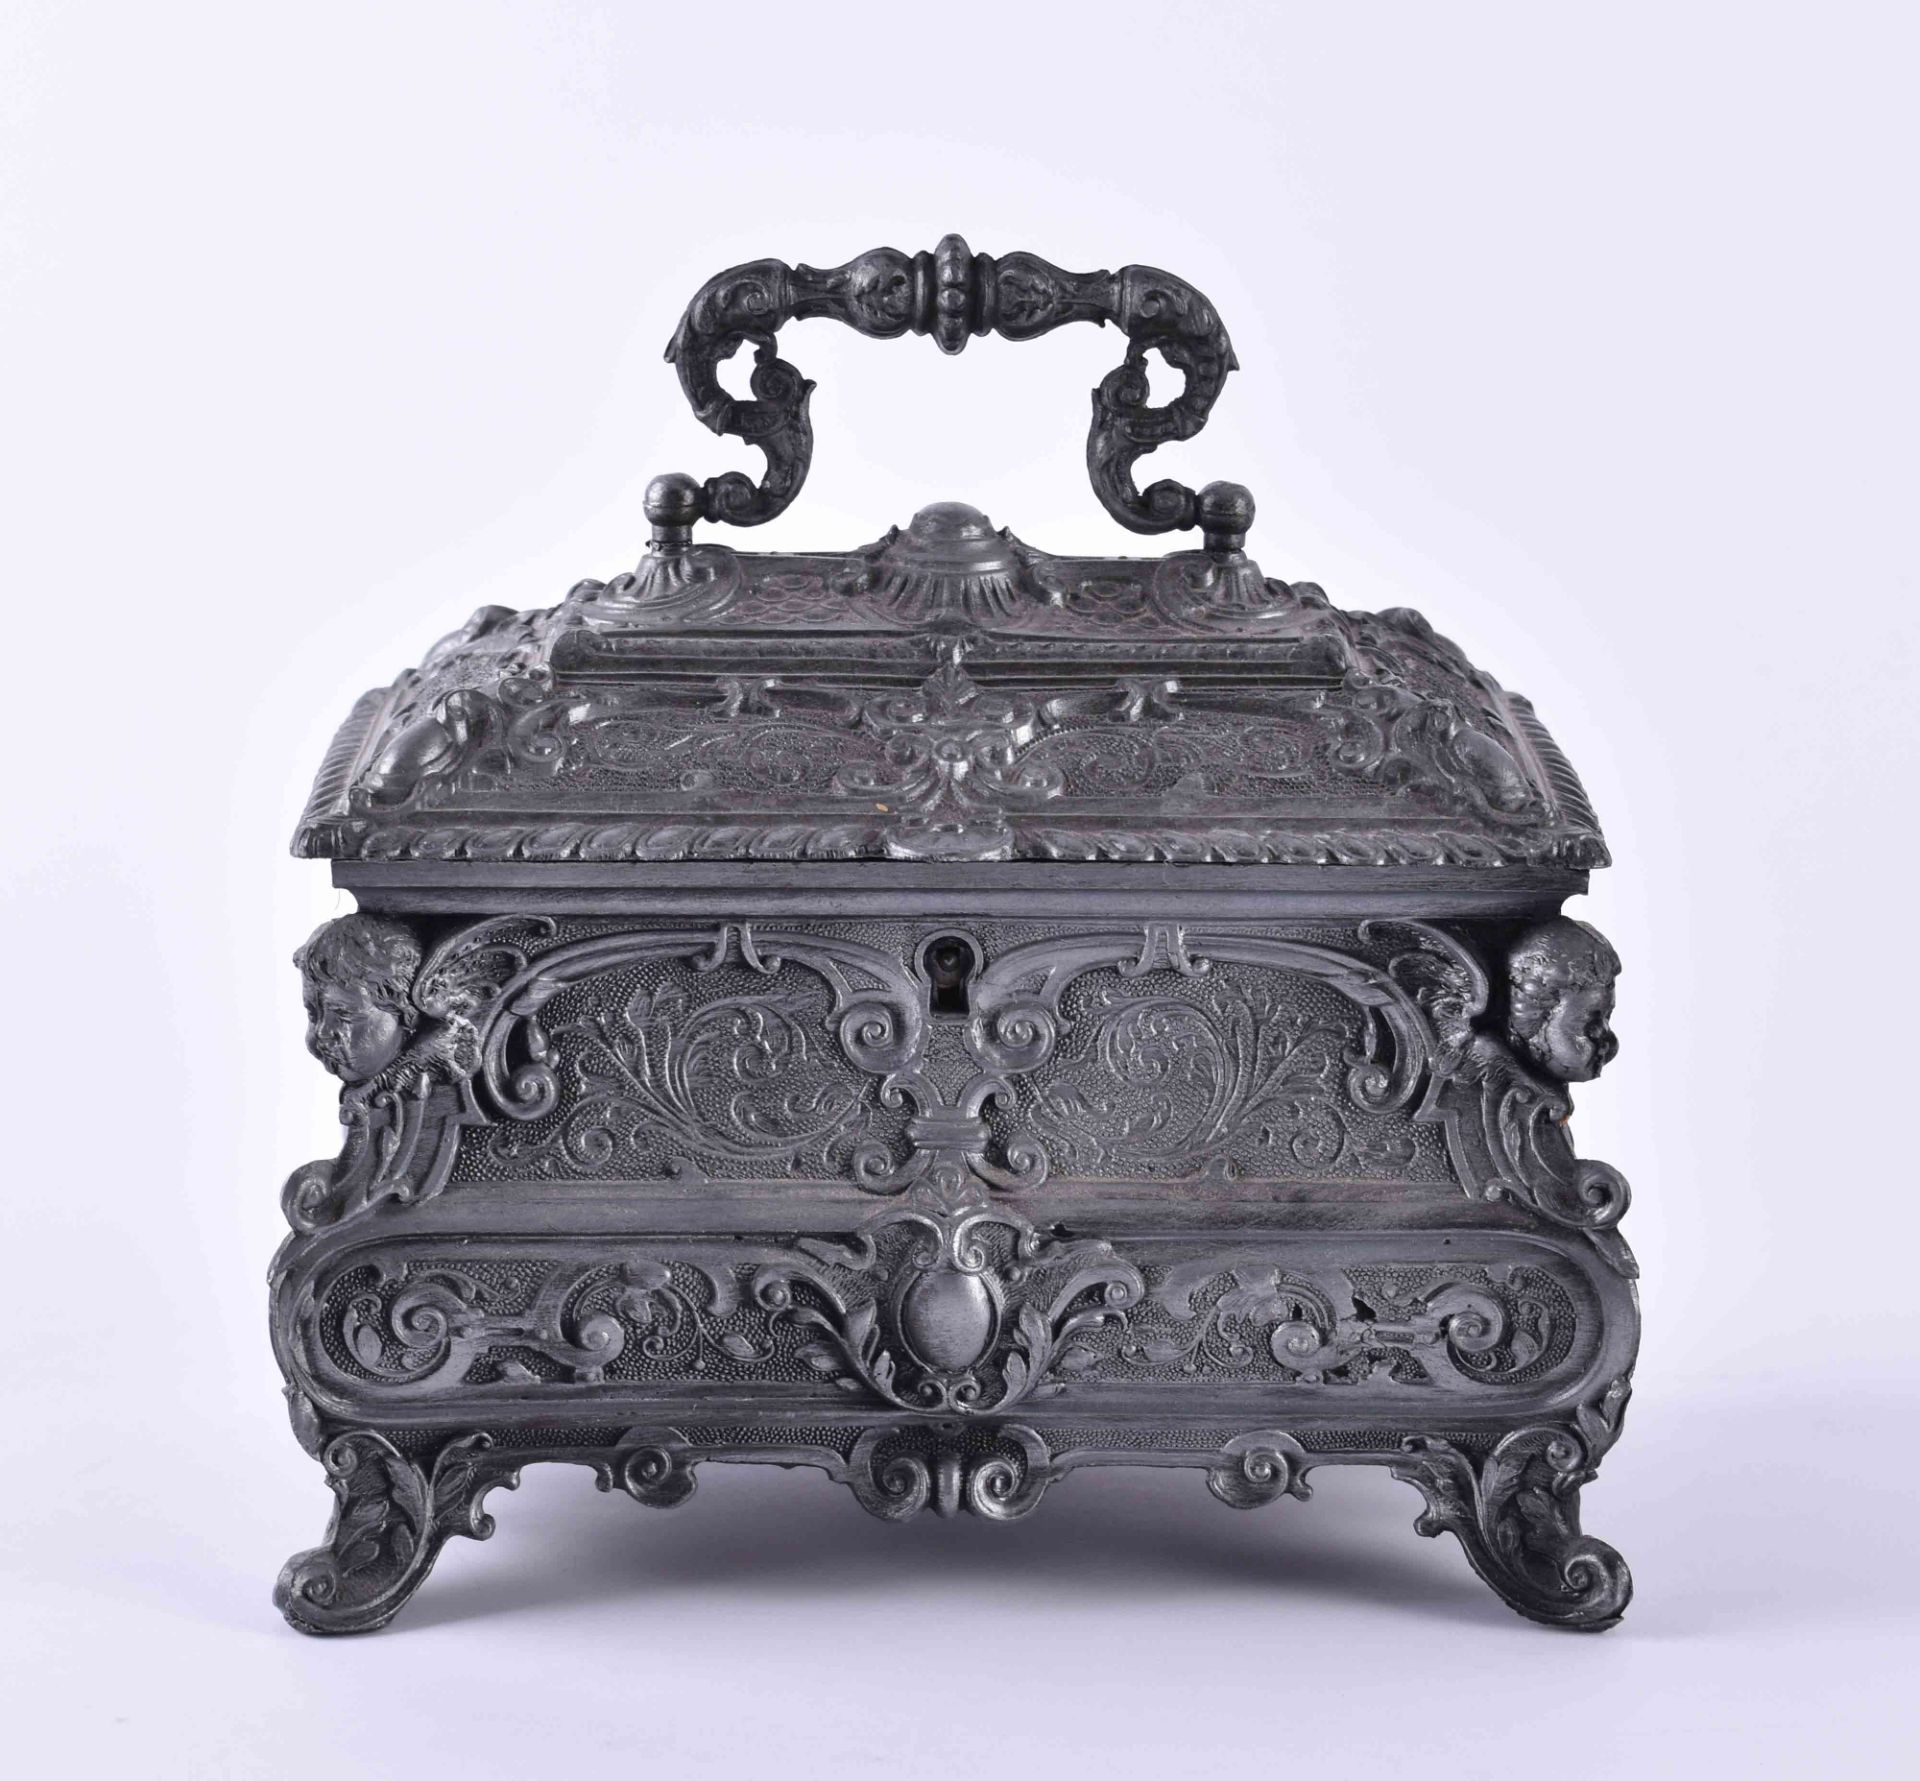 Zinnschatulleauf 4 Füßen stehend, abschließbar mit Schlüssel, reich verziert im barocken Stil, 14 cm